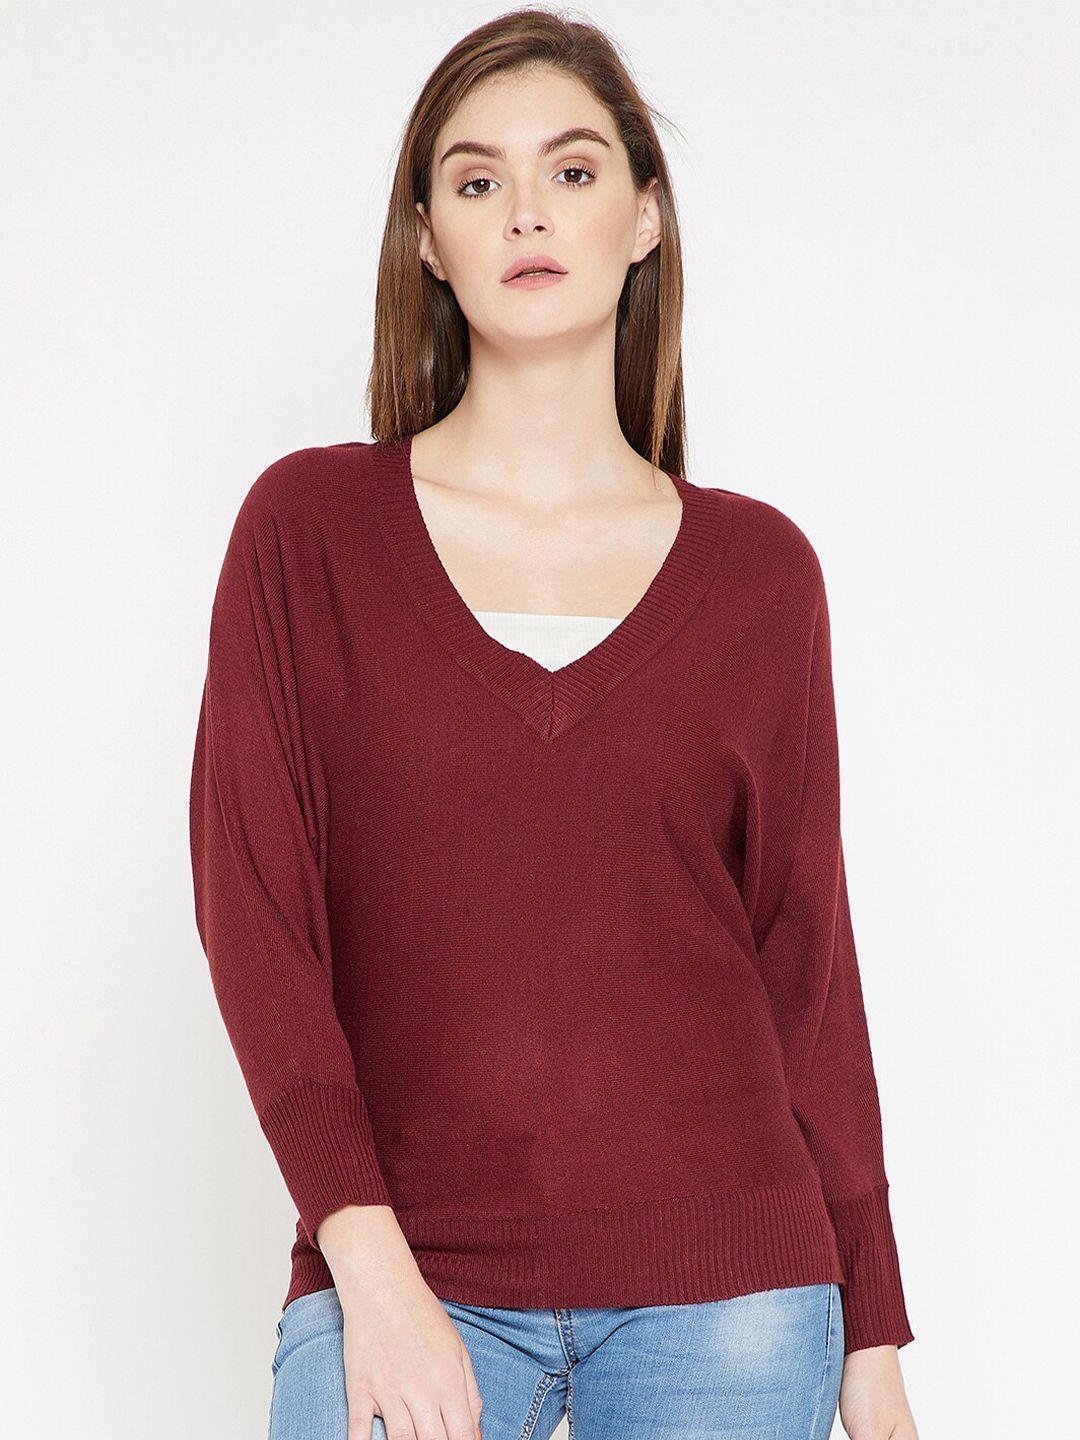 carlton-london-women-maroon-solid-sweater